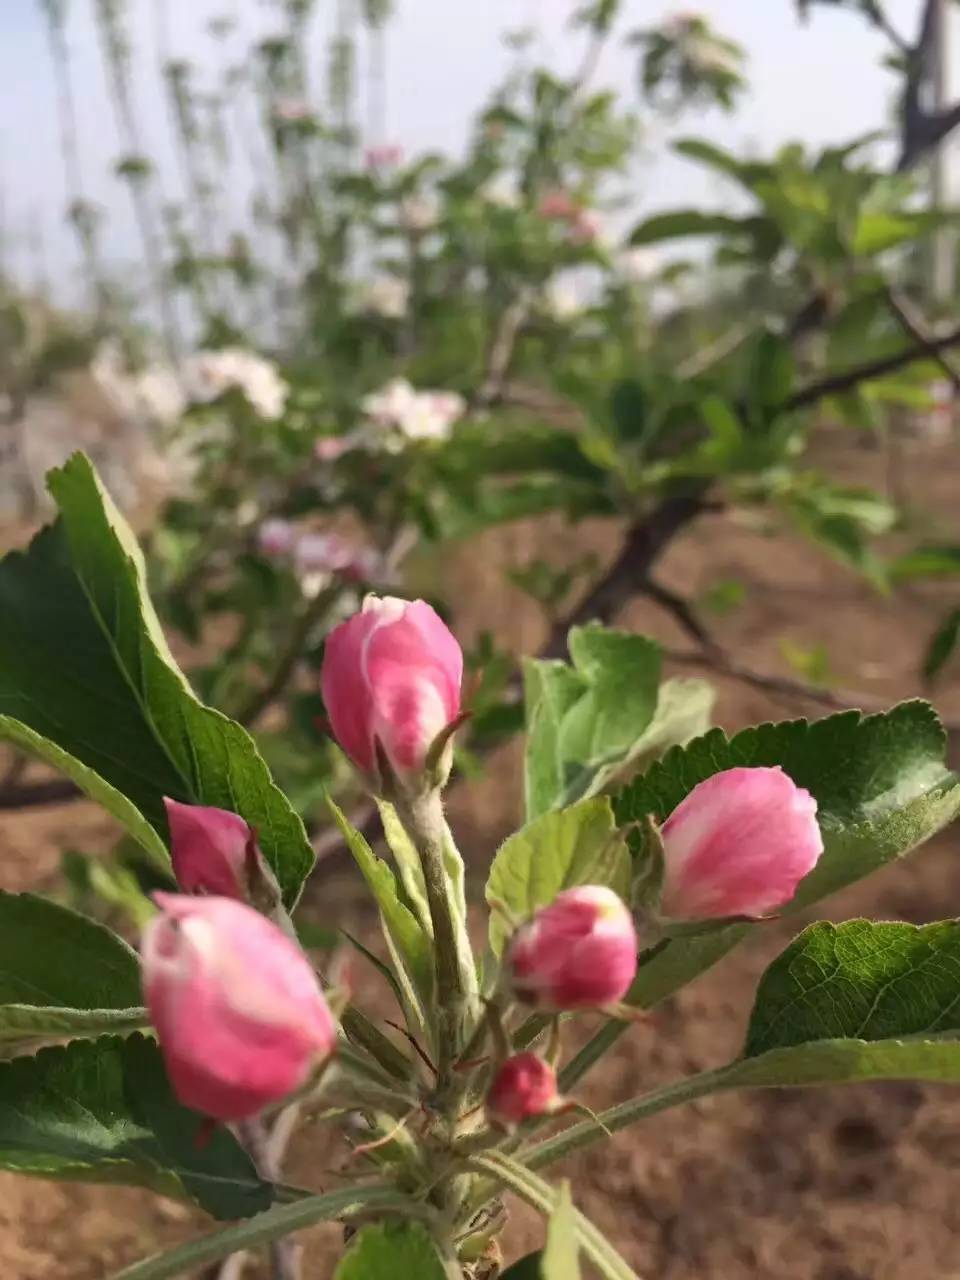 发一组苹果树开花照片,很美!